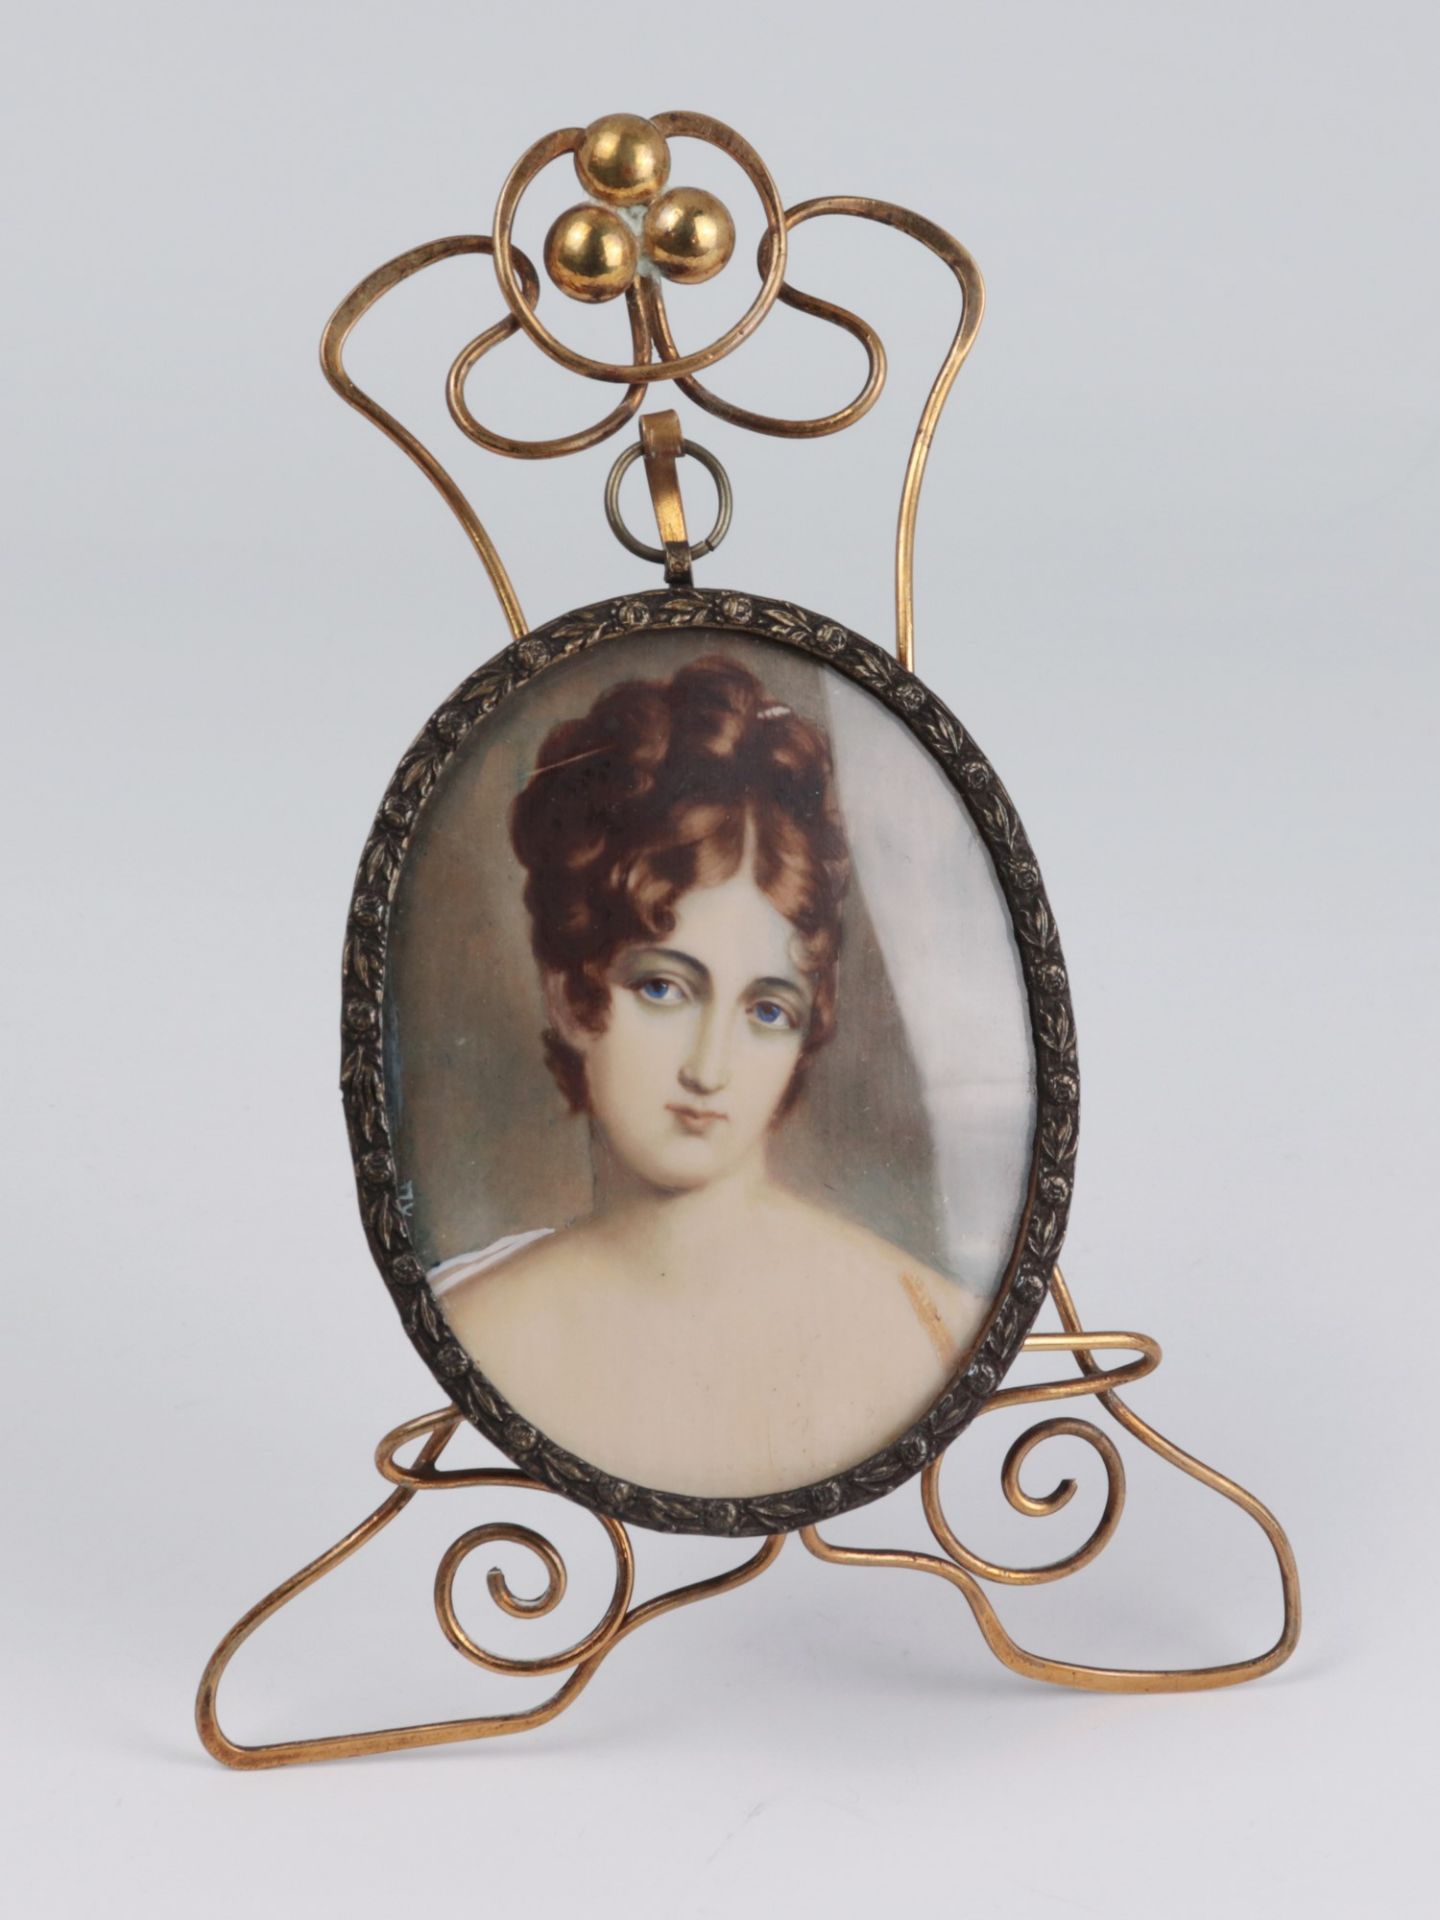 Miniatur um 1900, Gouache auf Bein, oval, Porträt einer jungen Dame, monogrammiert, RhG,